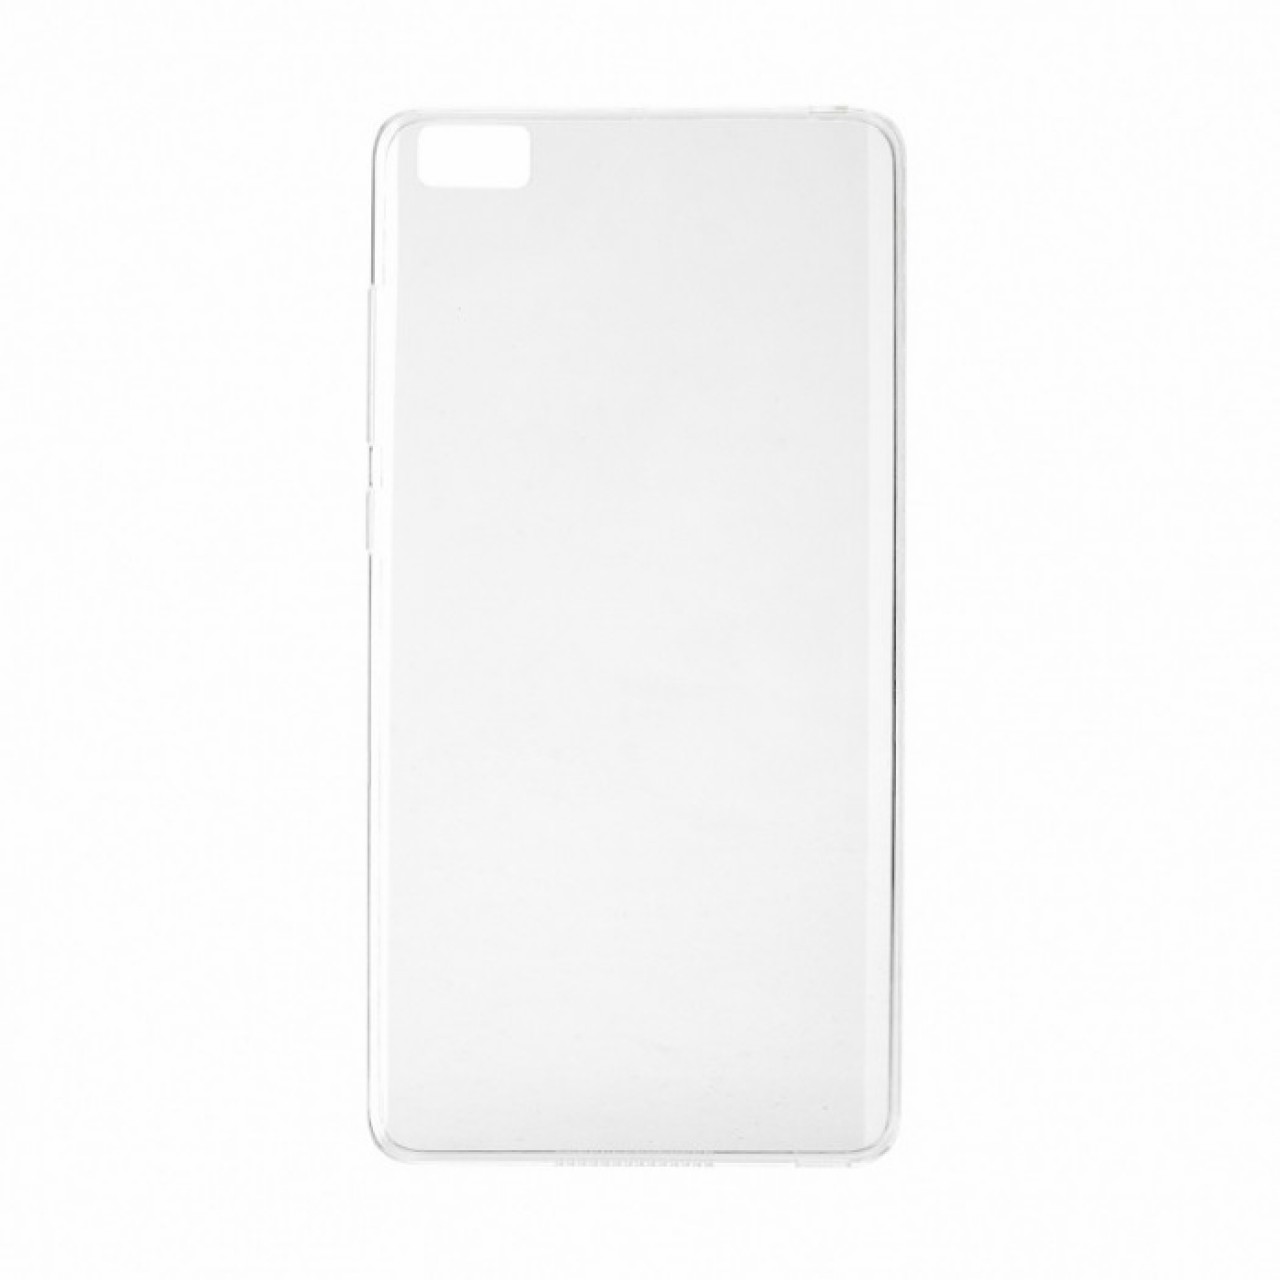 Θήκη Προστασίας Σιλικόνης Xiaomi Mi Note - Back Cover Silicone Case Oem - Transparent